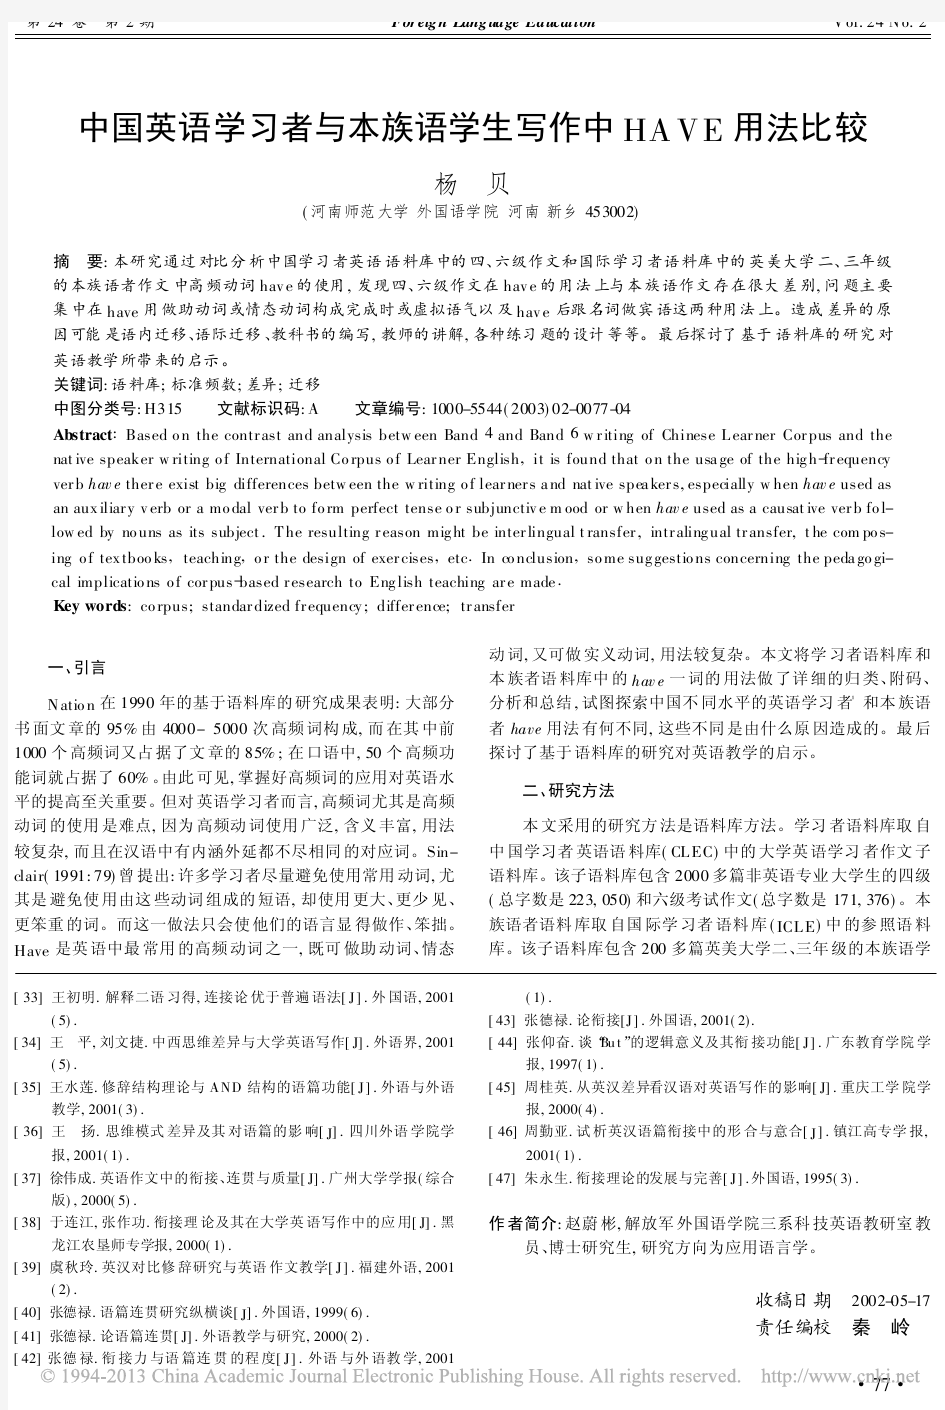 中国英语学习者与本族语学生写作中HAVE用法比较_杨贝